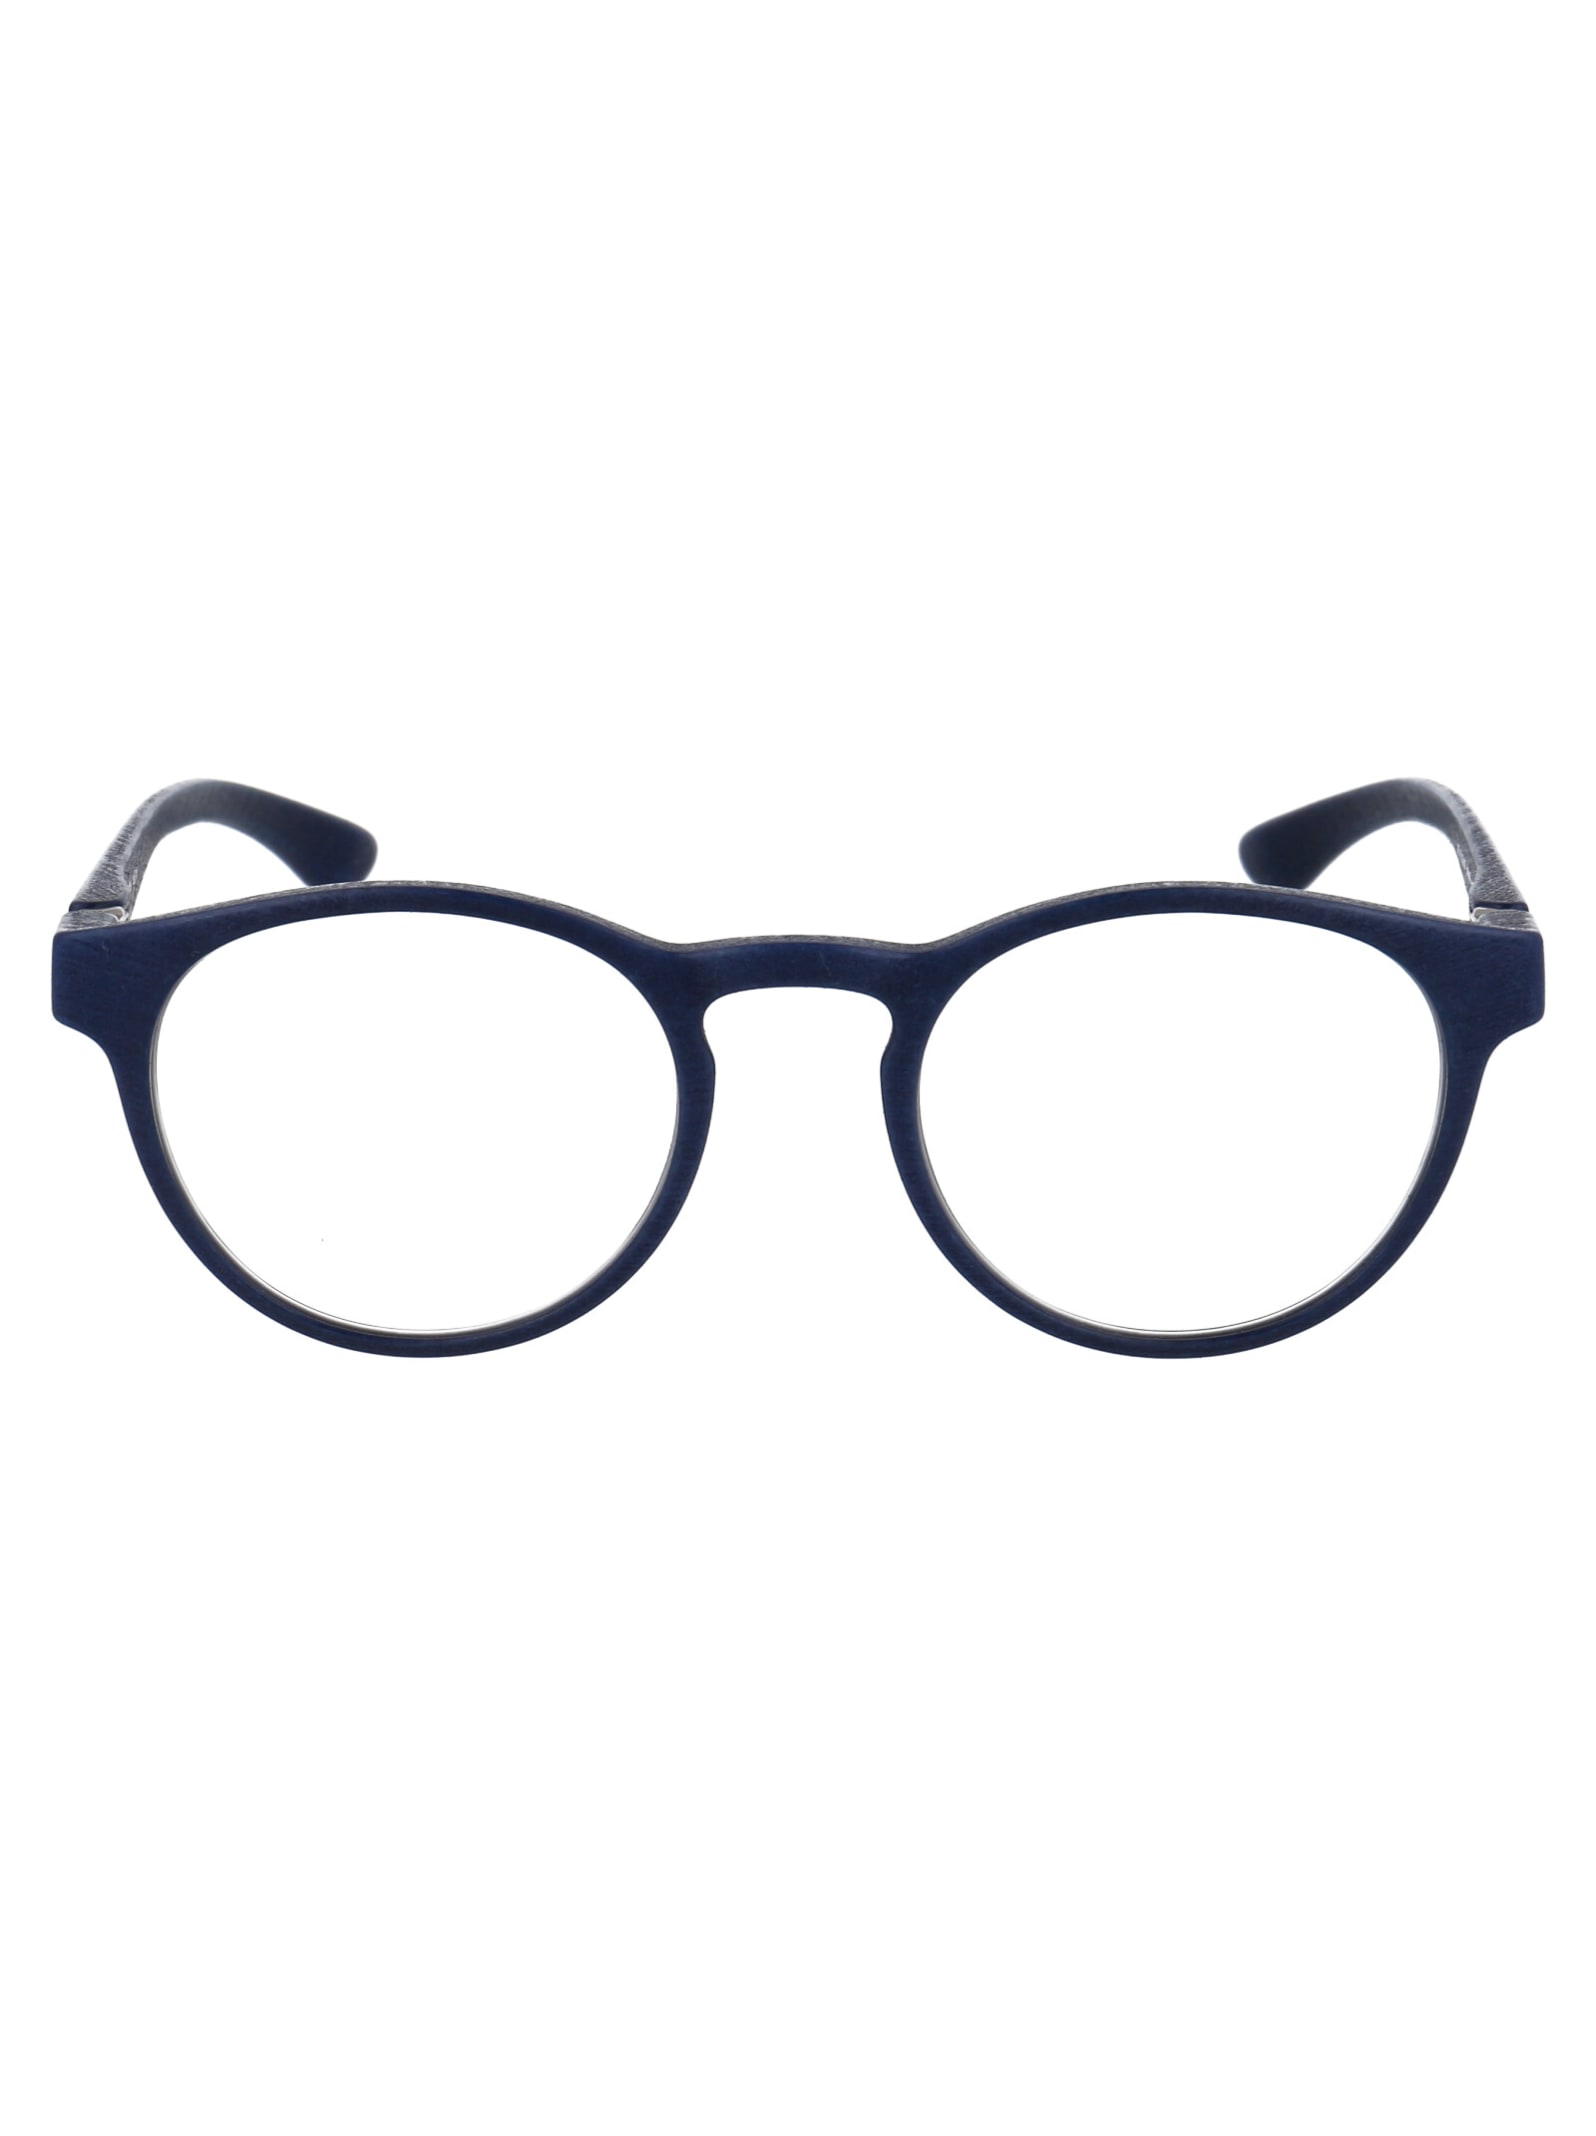 Mykita Spectre Glasses In 325 Md25 Navy Blue